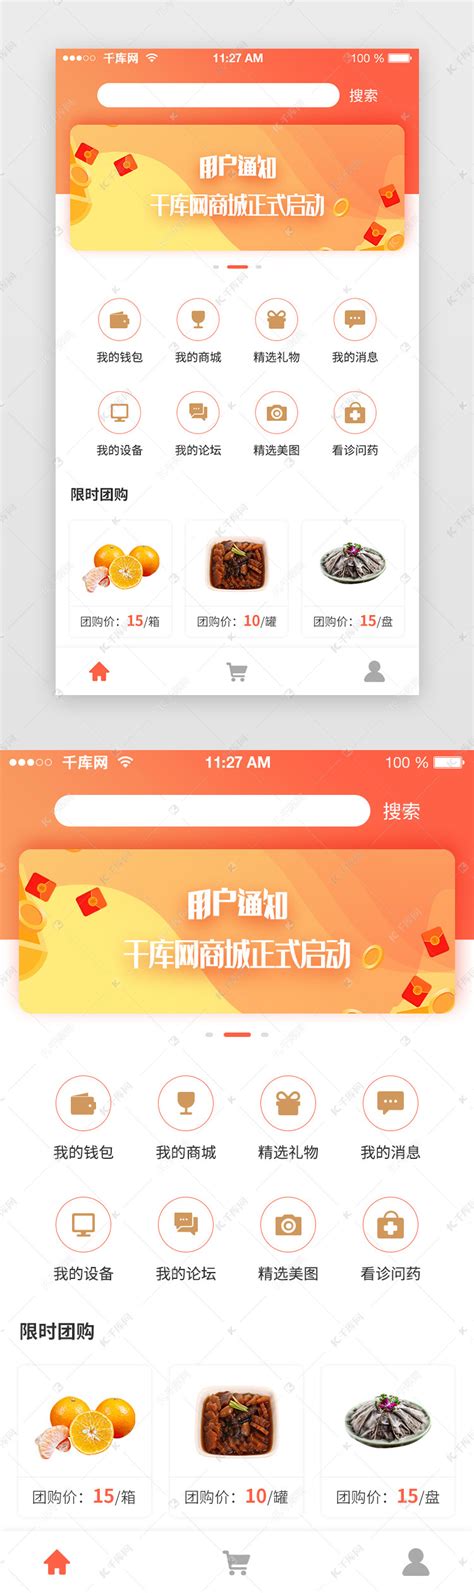 电商团购app购物首页UI页面ui界面设计素材-千库网